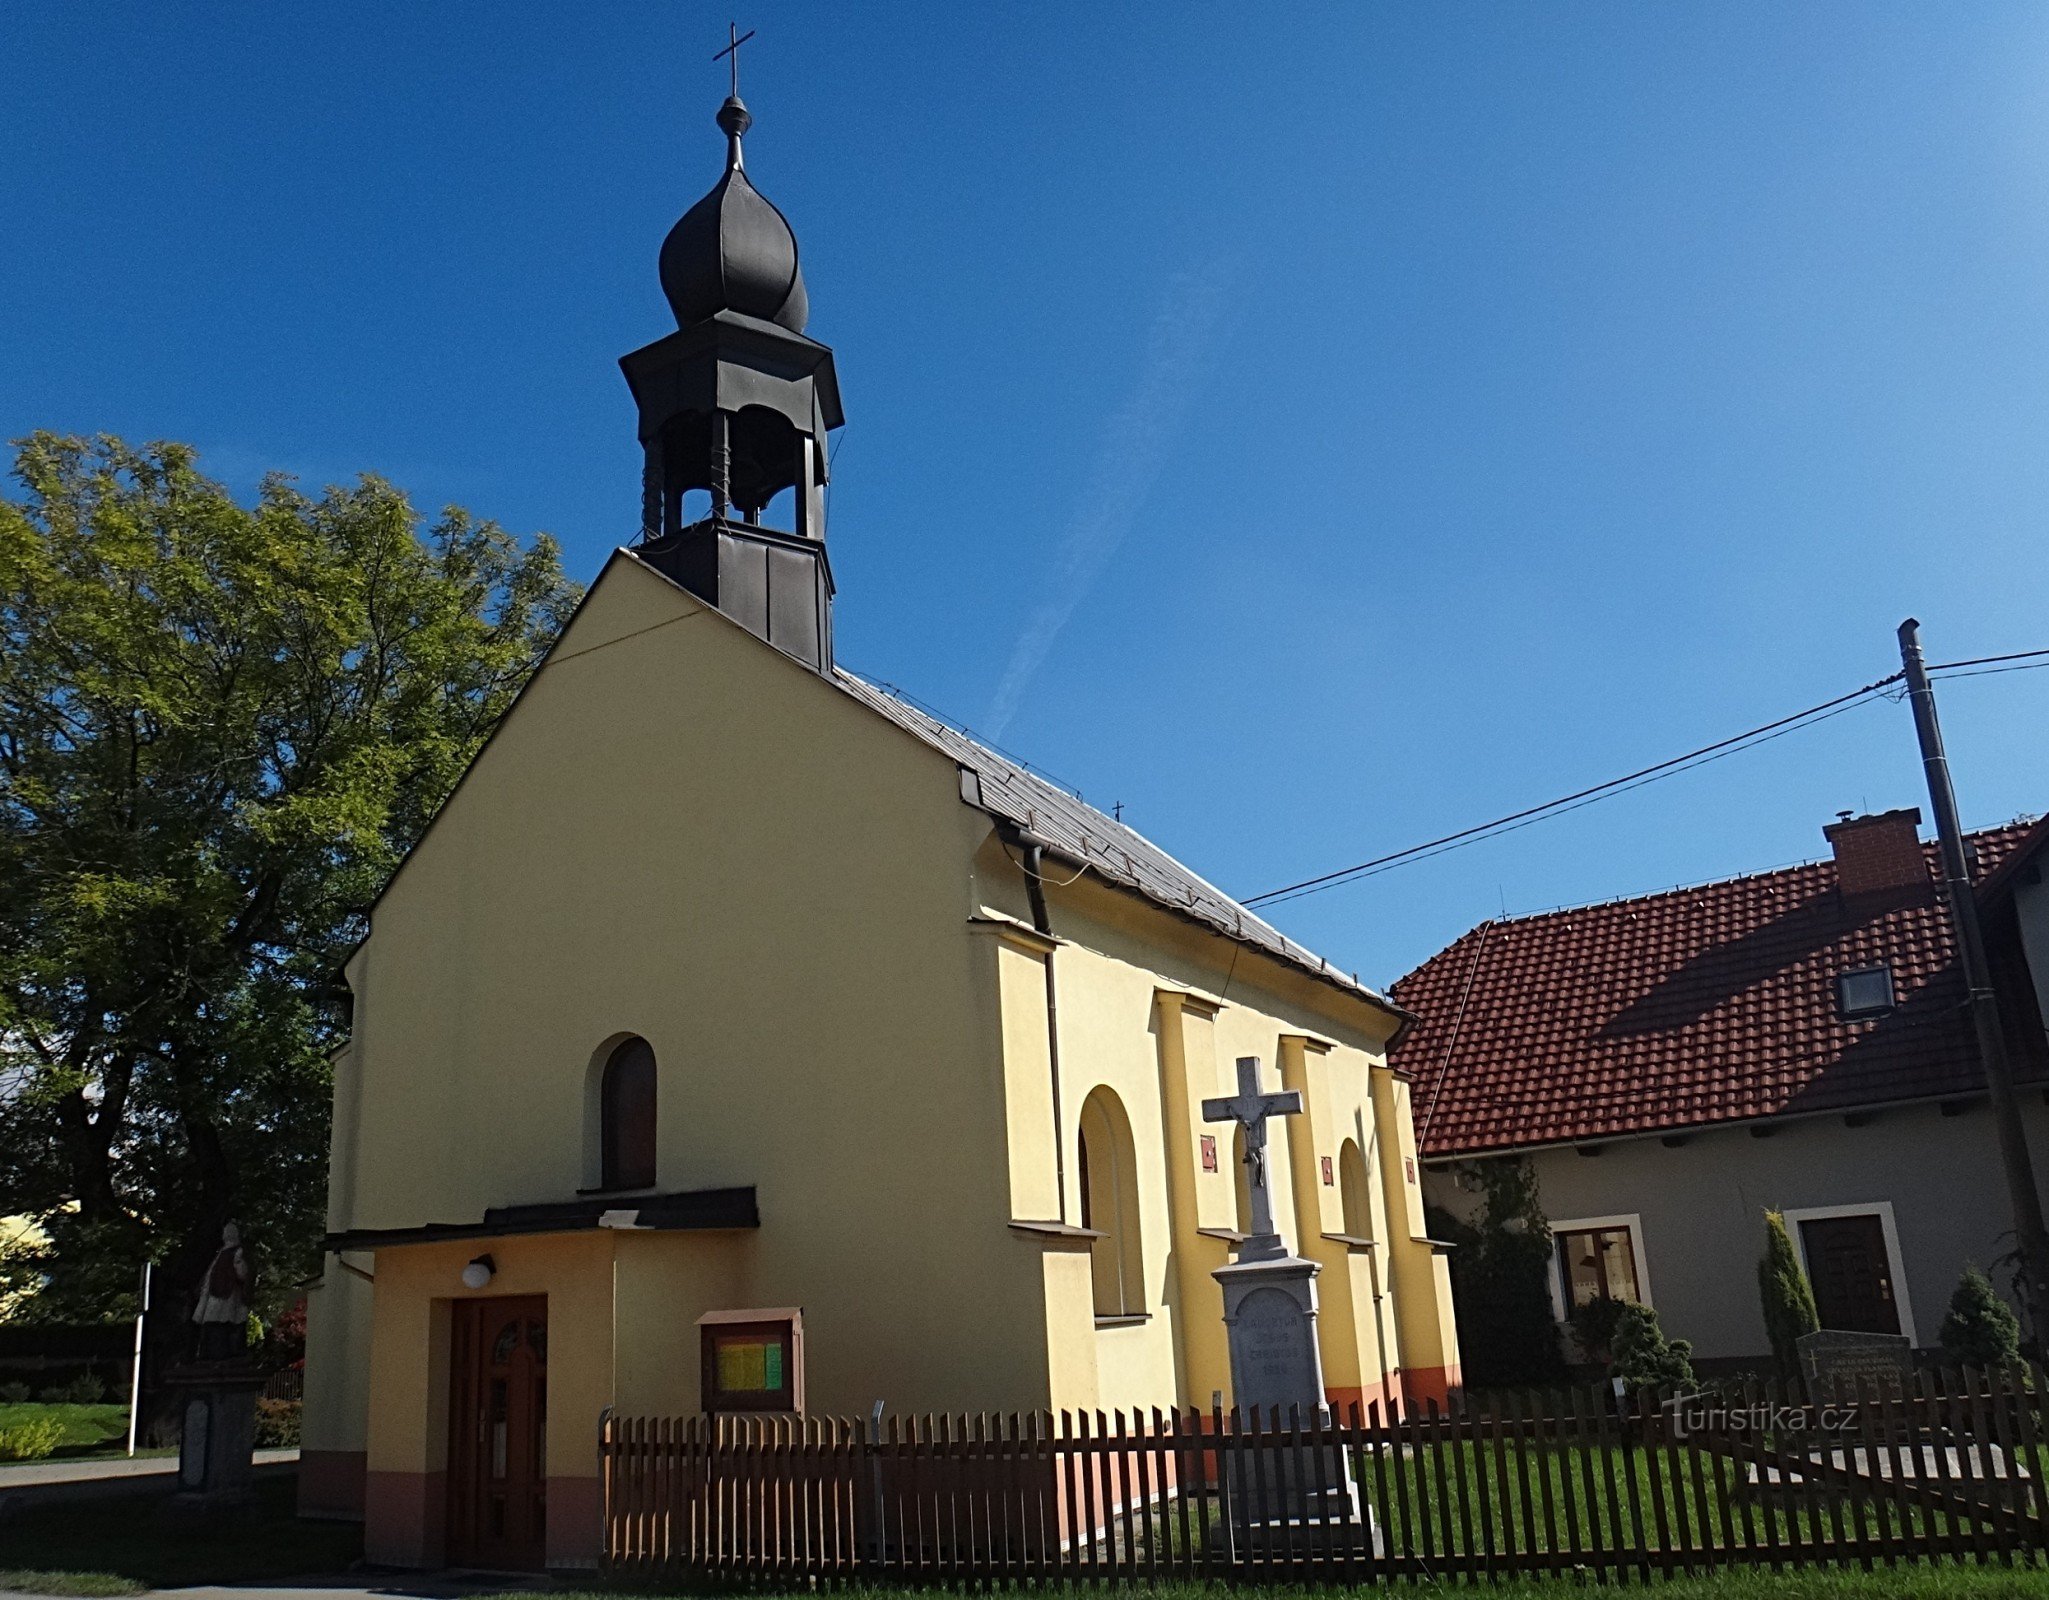 Věřňovice Chapel of St. Isidore